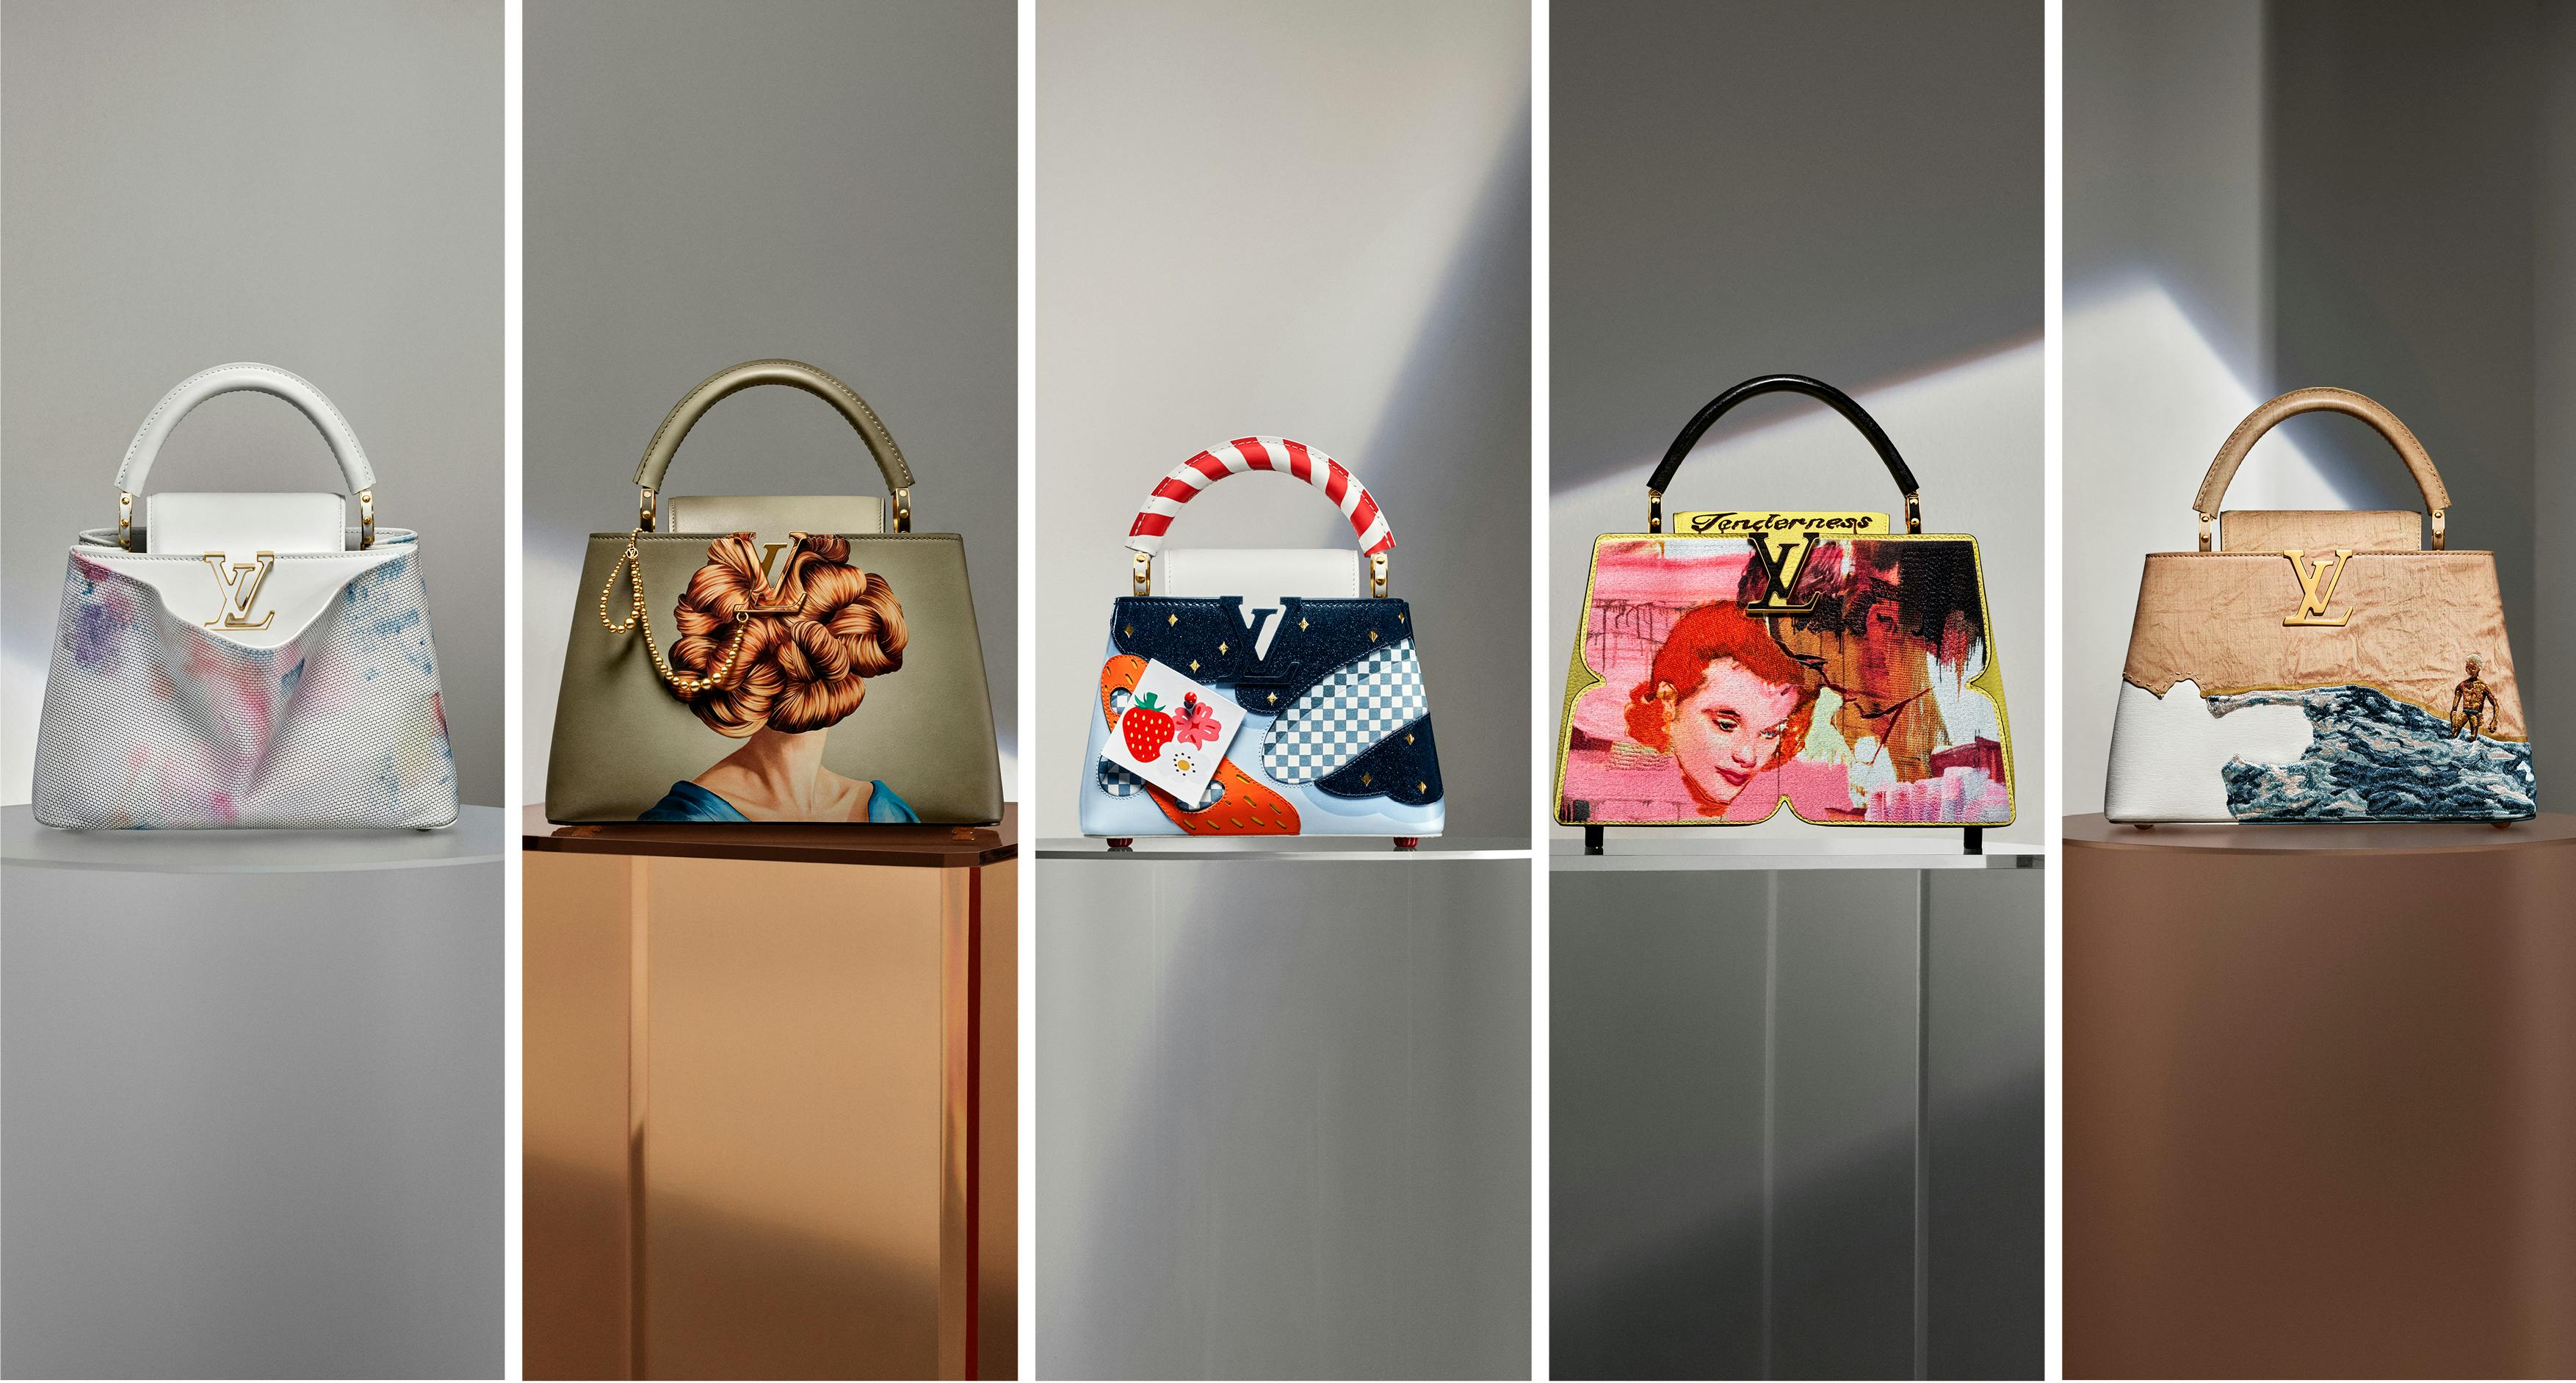 Artycapucines 2022: le borse più famose di Louis Vuitton nelle